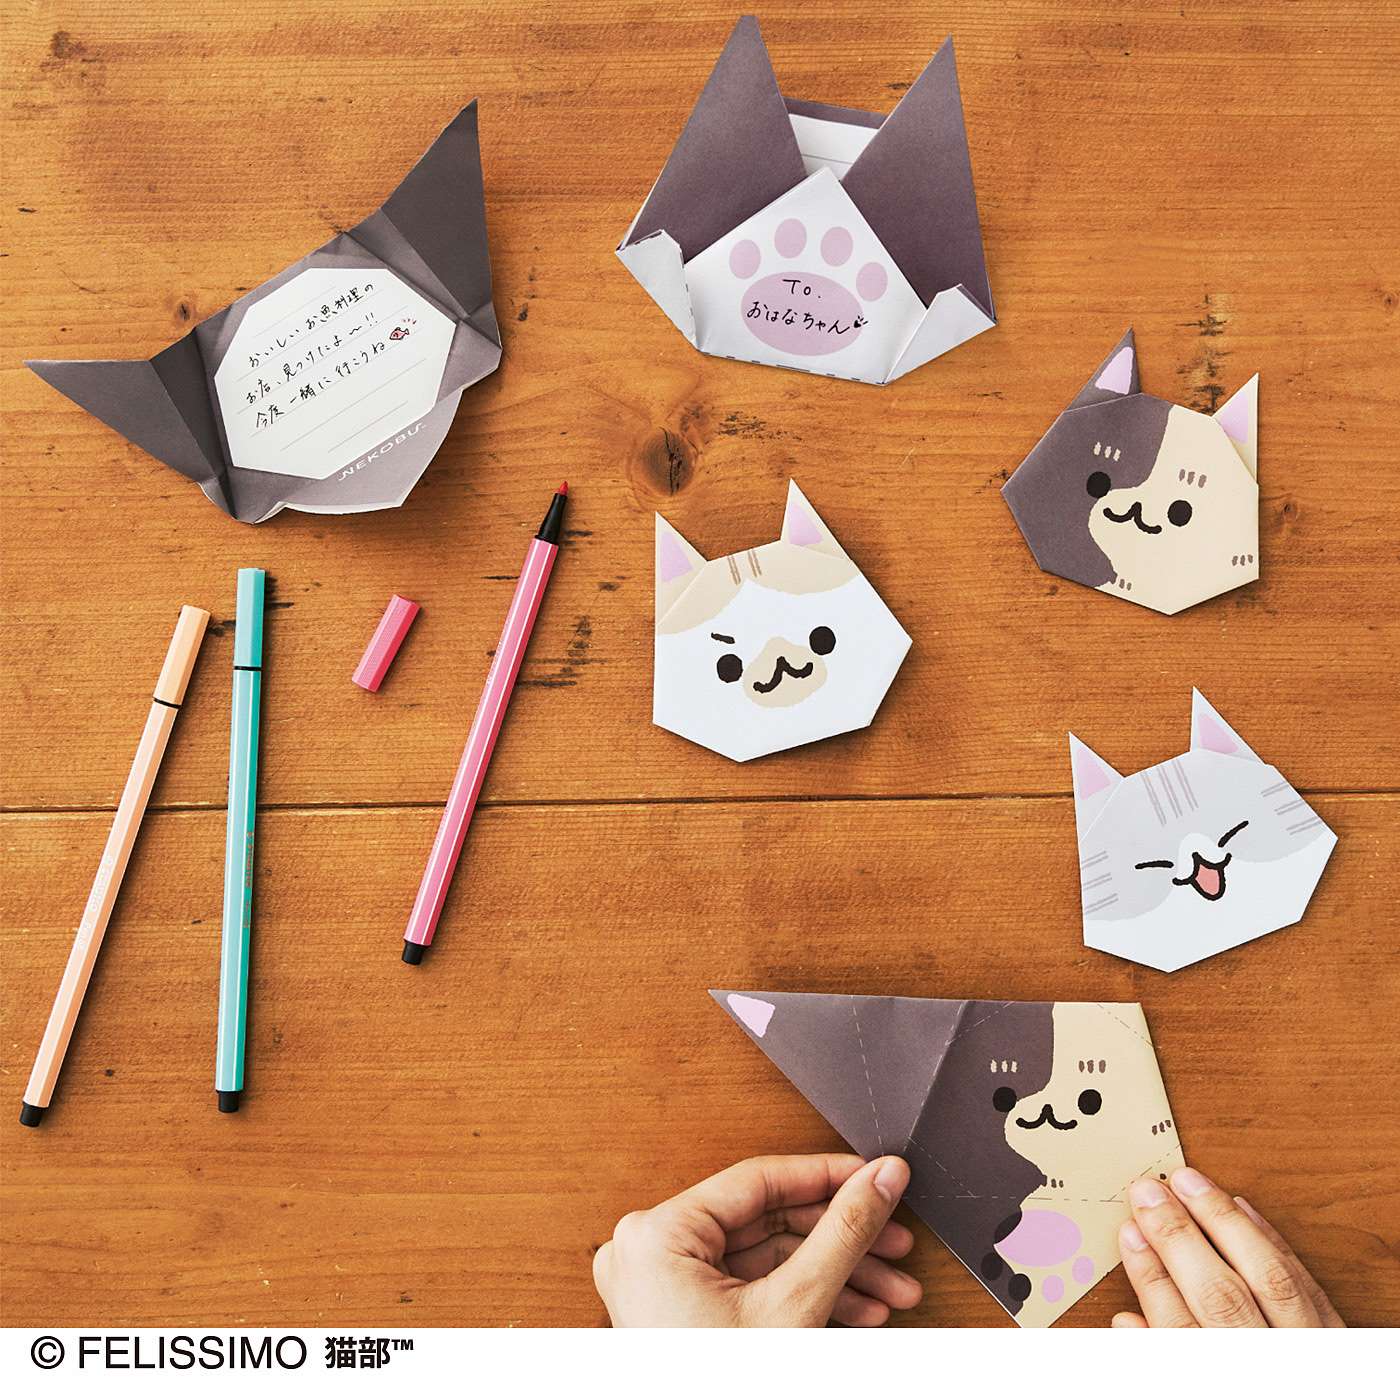 995さんとコラボ 折るだけでかわいい猫さんの顔ができる にゃんにゃん折り紙 カード が フェリシモ猫部 から新登場 株式会社フェリシモのプレスリリース